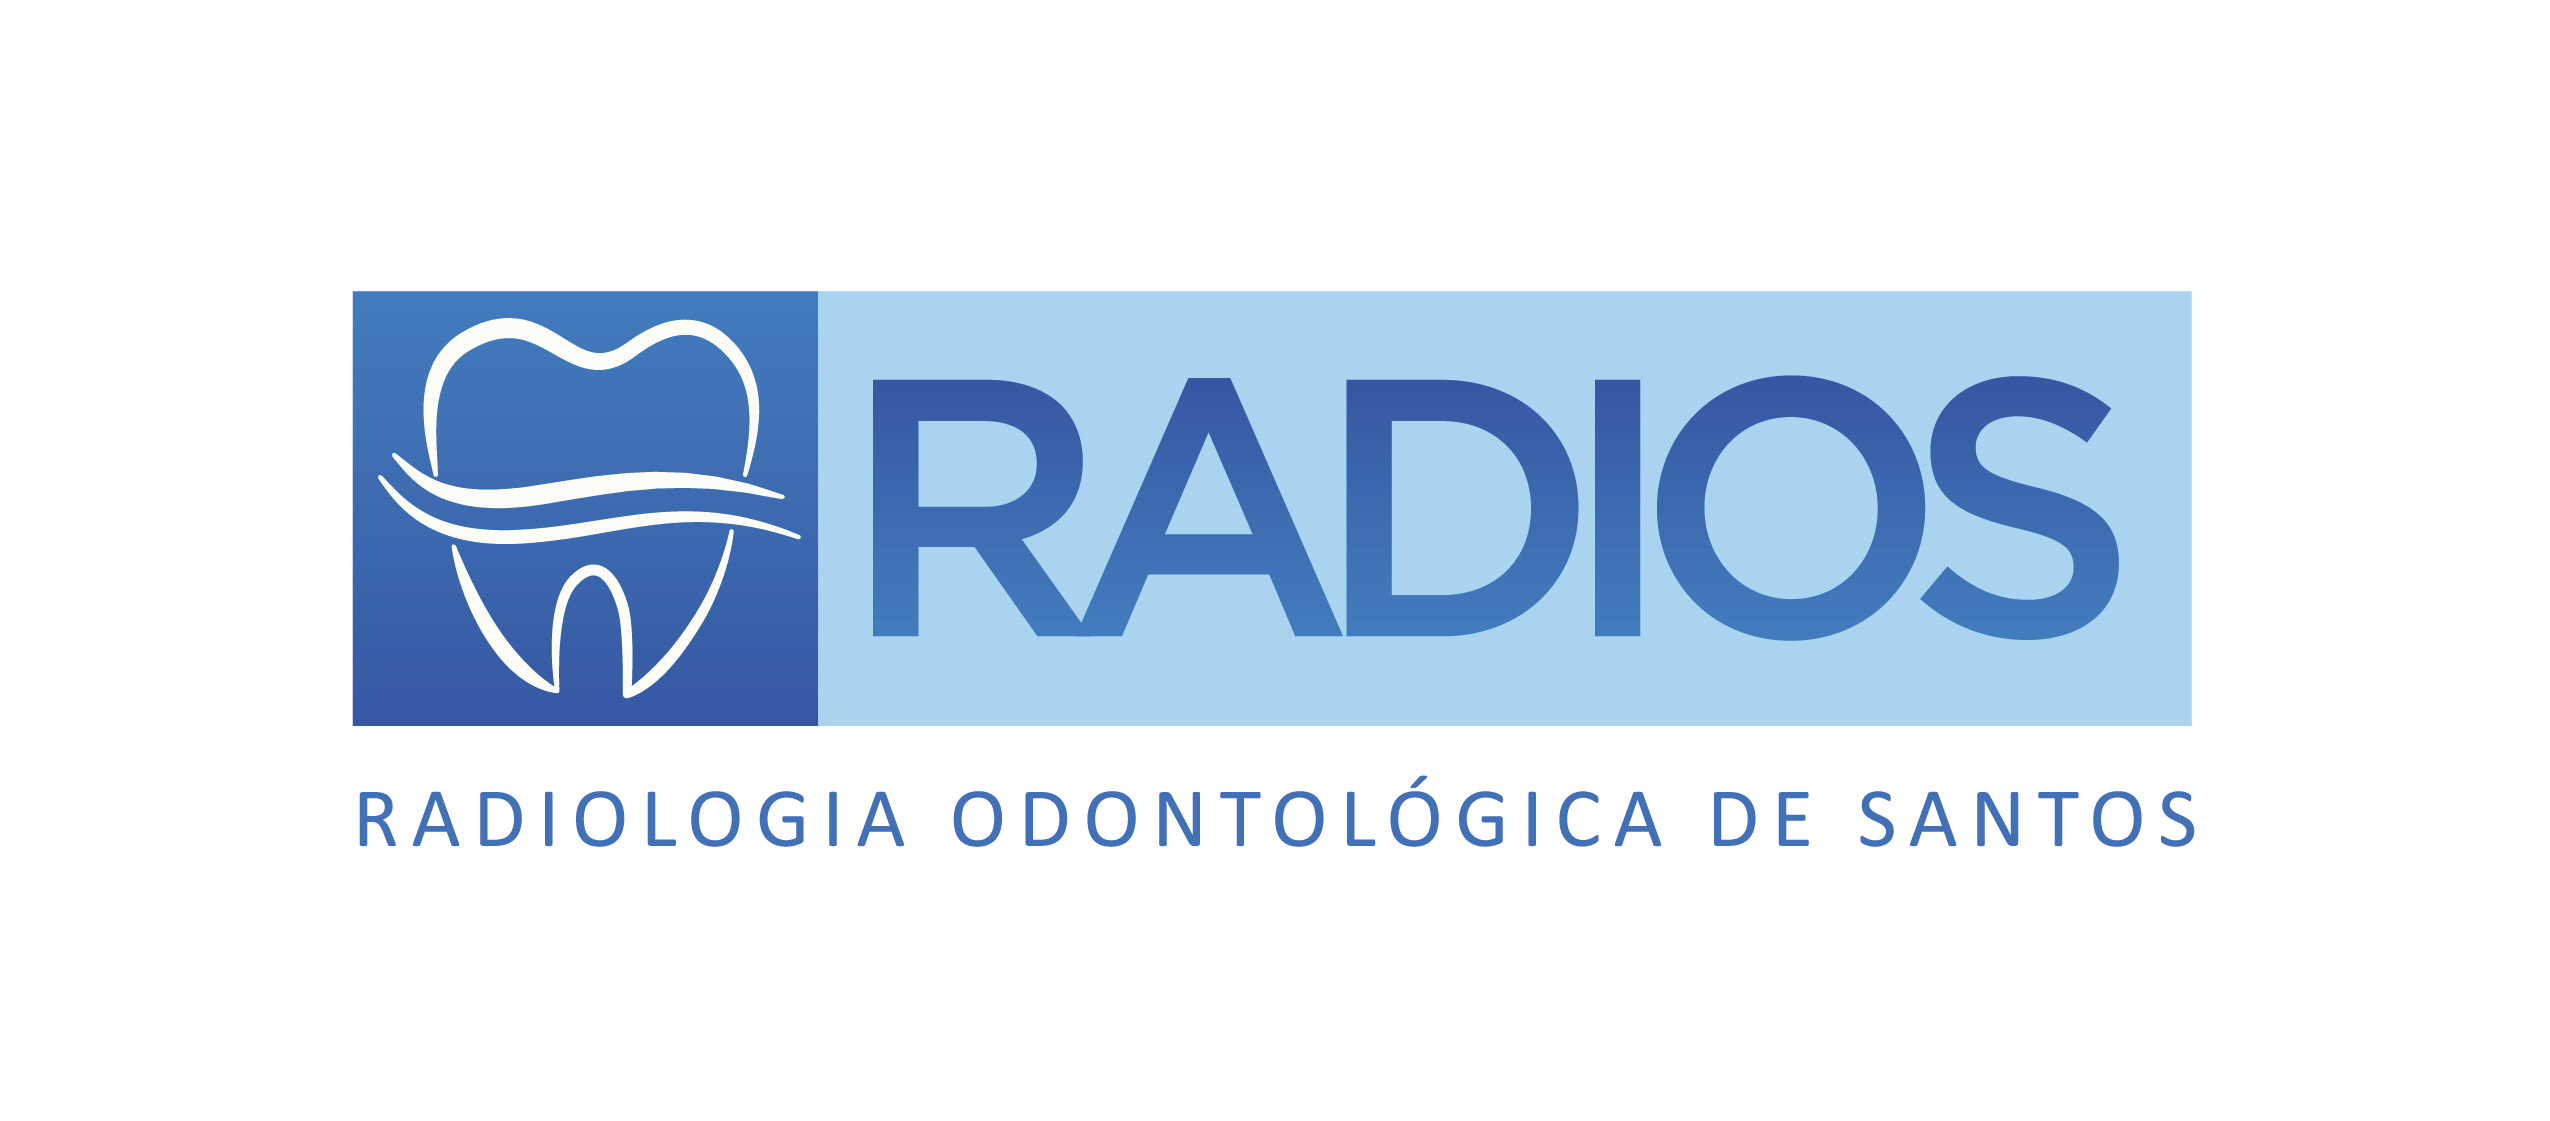 RADIOS - RADIOLOGIA ODONTOLÓGICA DE SANTOS